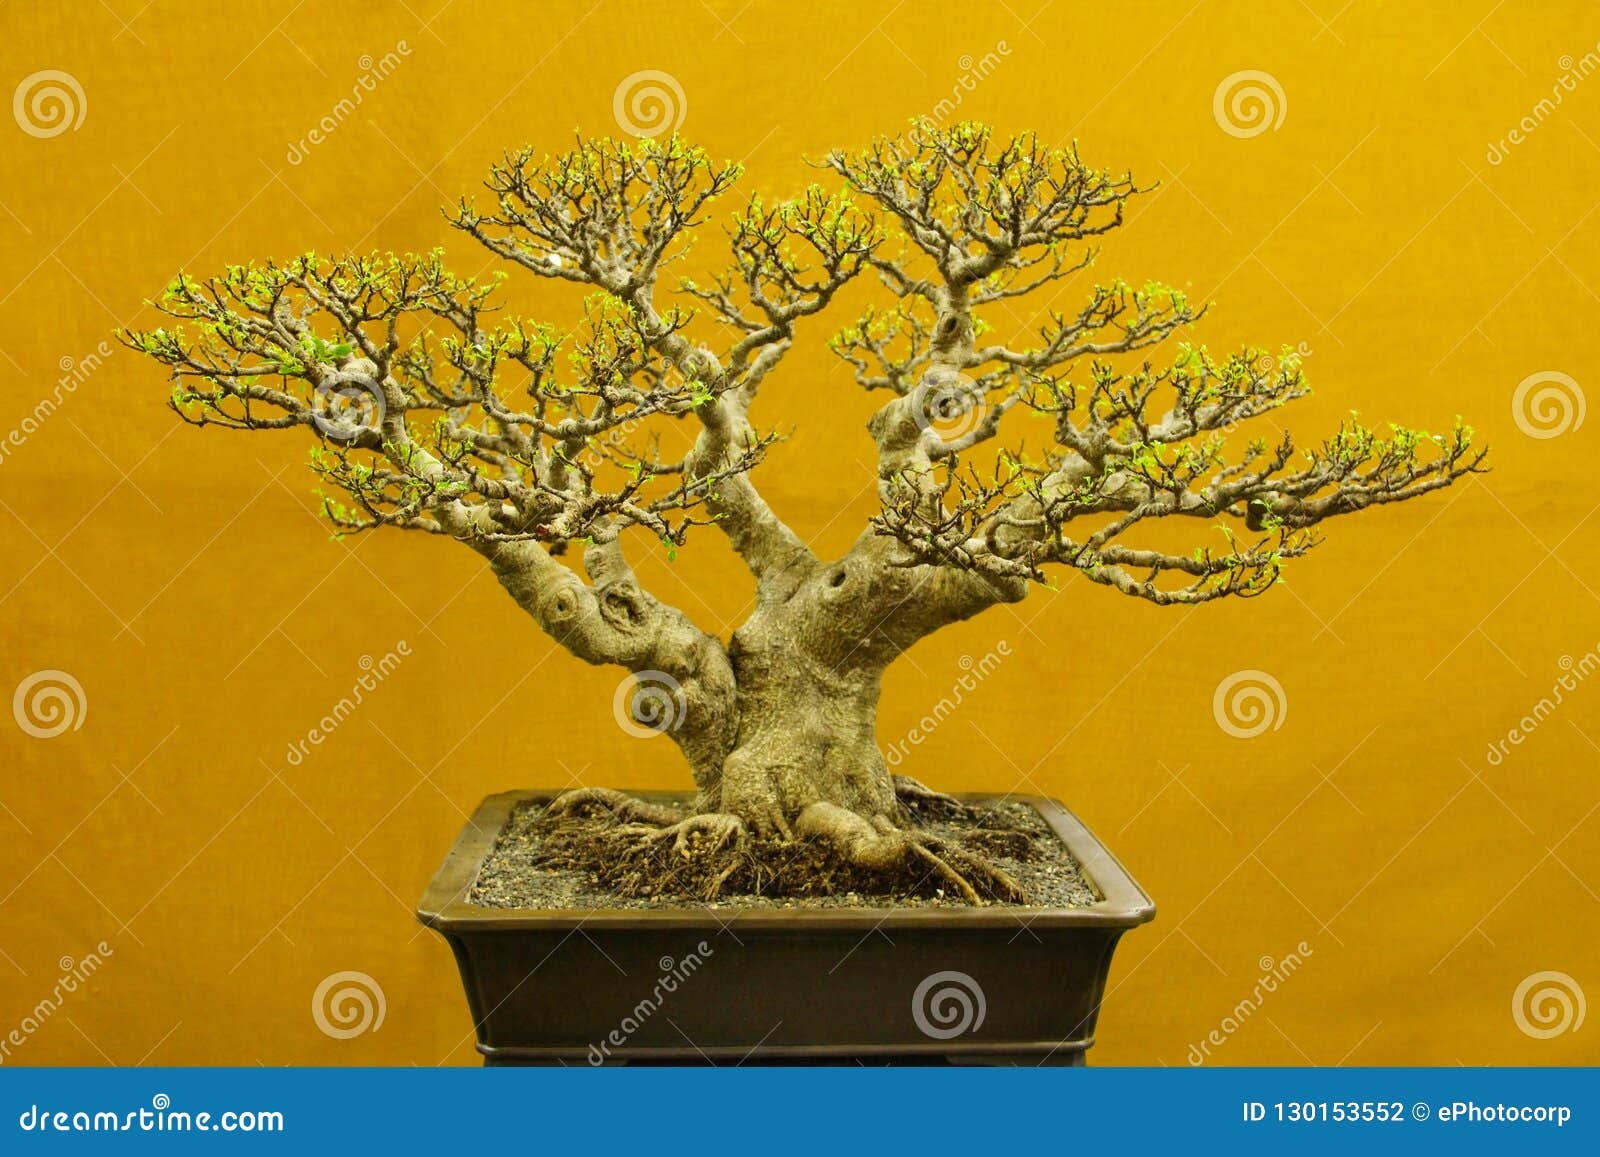 pamant pentru bonsai